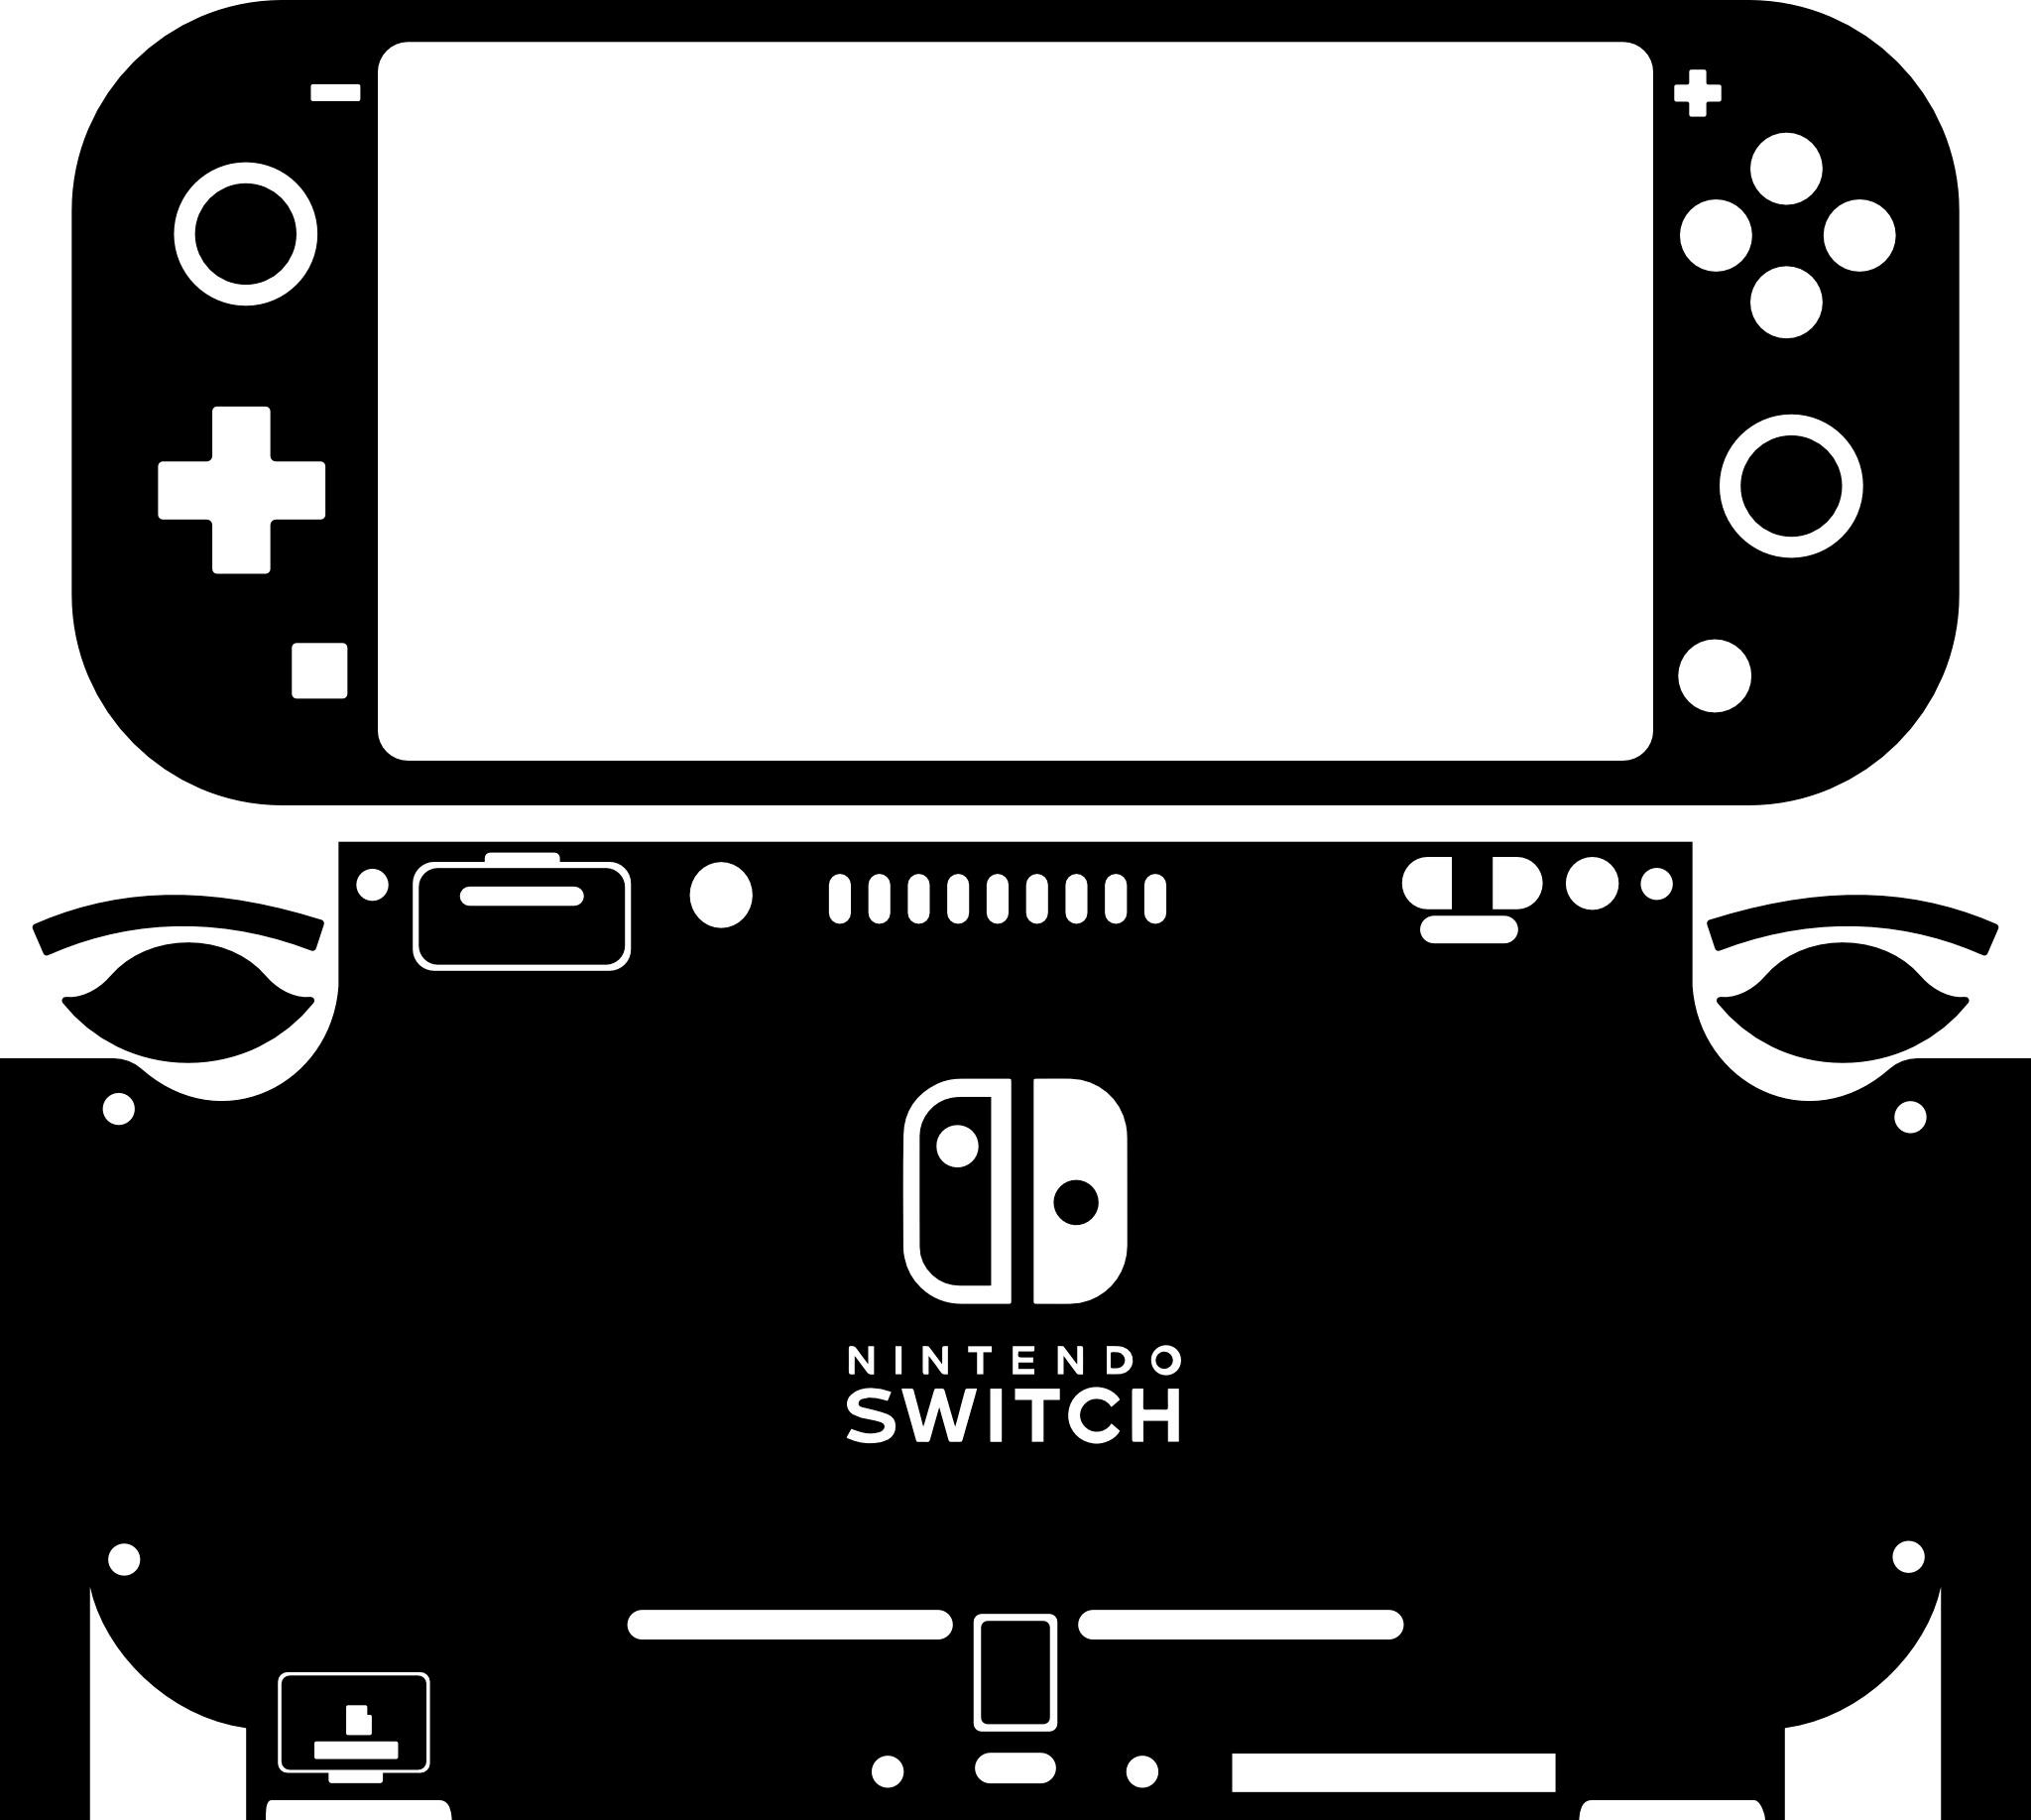 Skin decal dán Nintendo Switch Lite mẫu camo rằn ri (dễ dán, đã cắt sẵn)